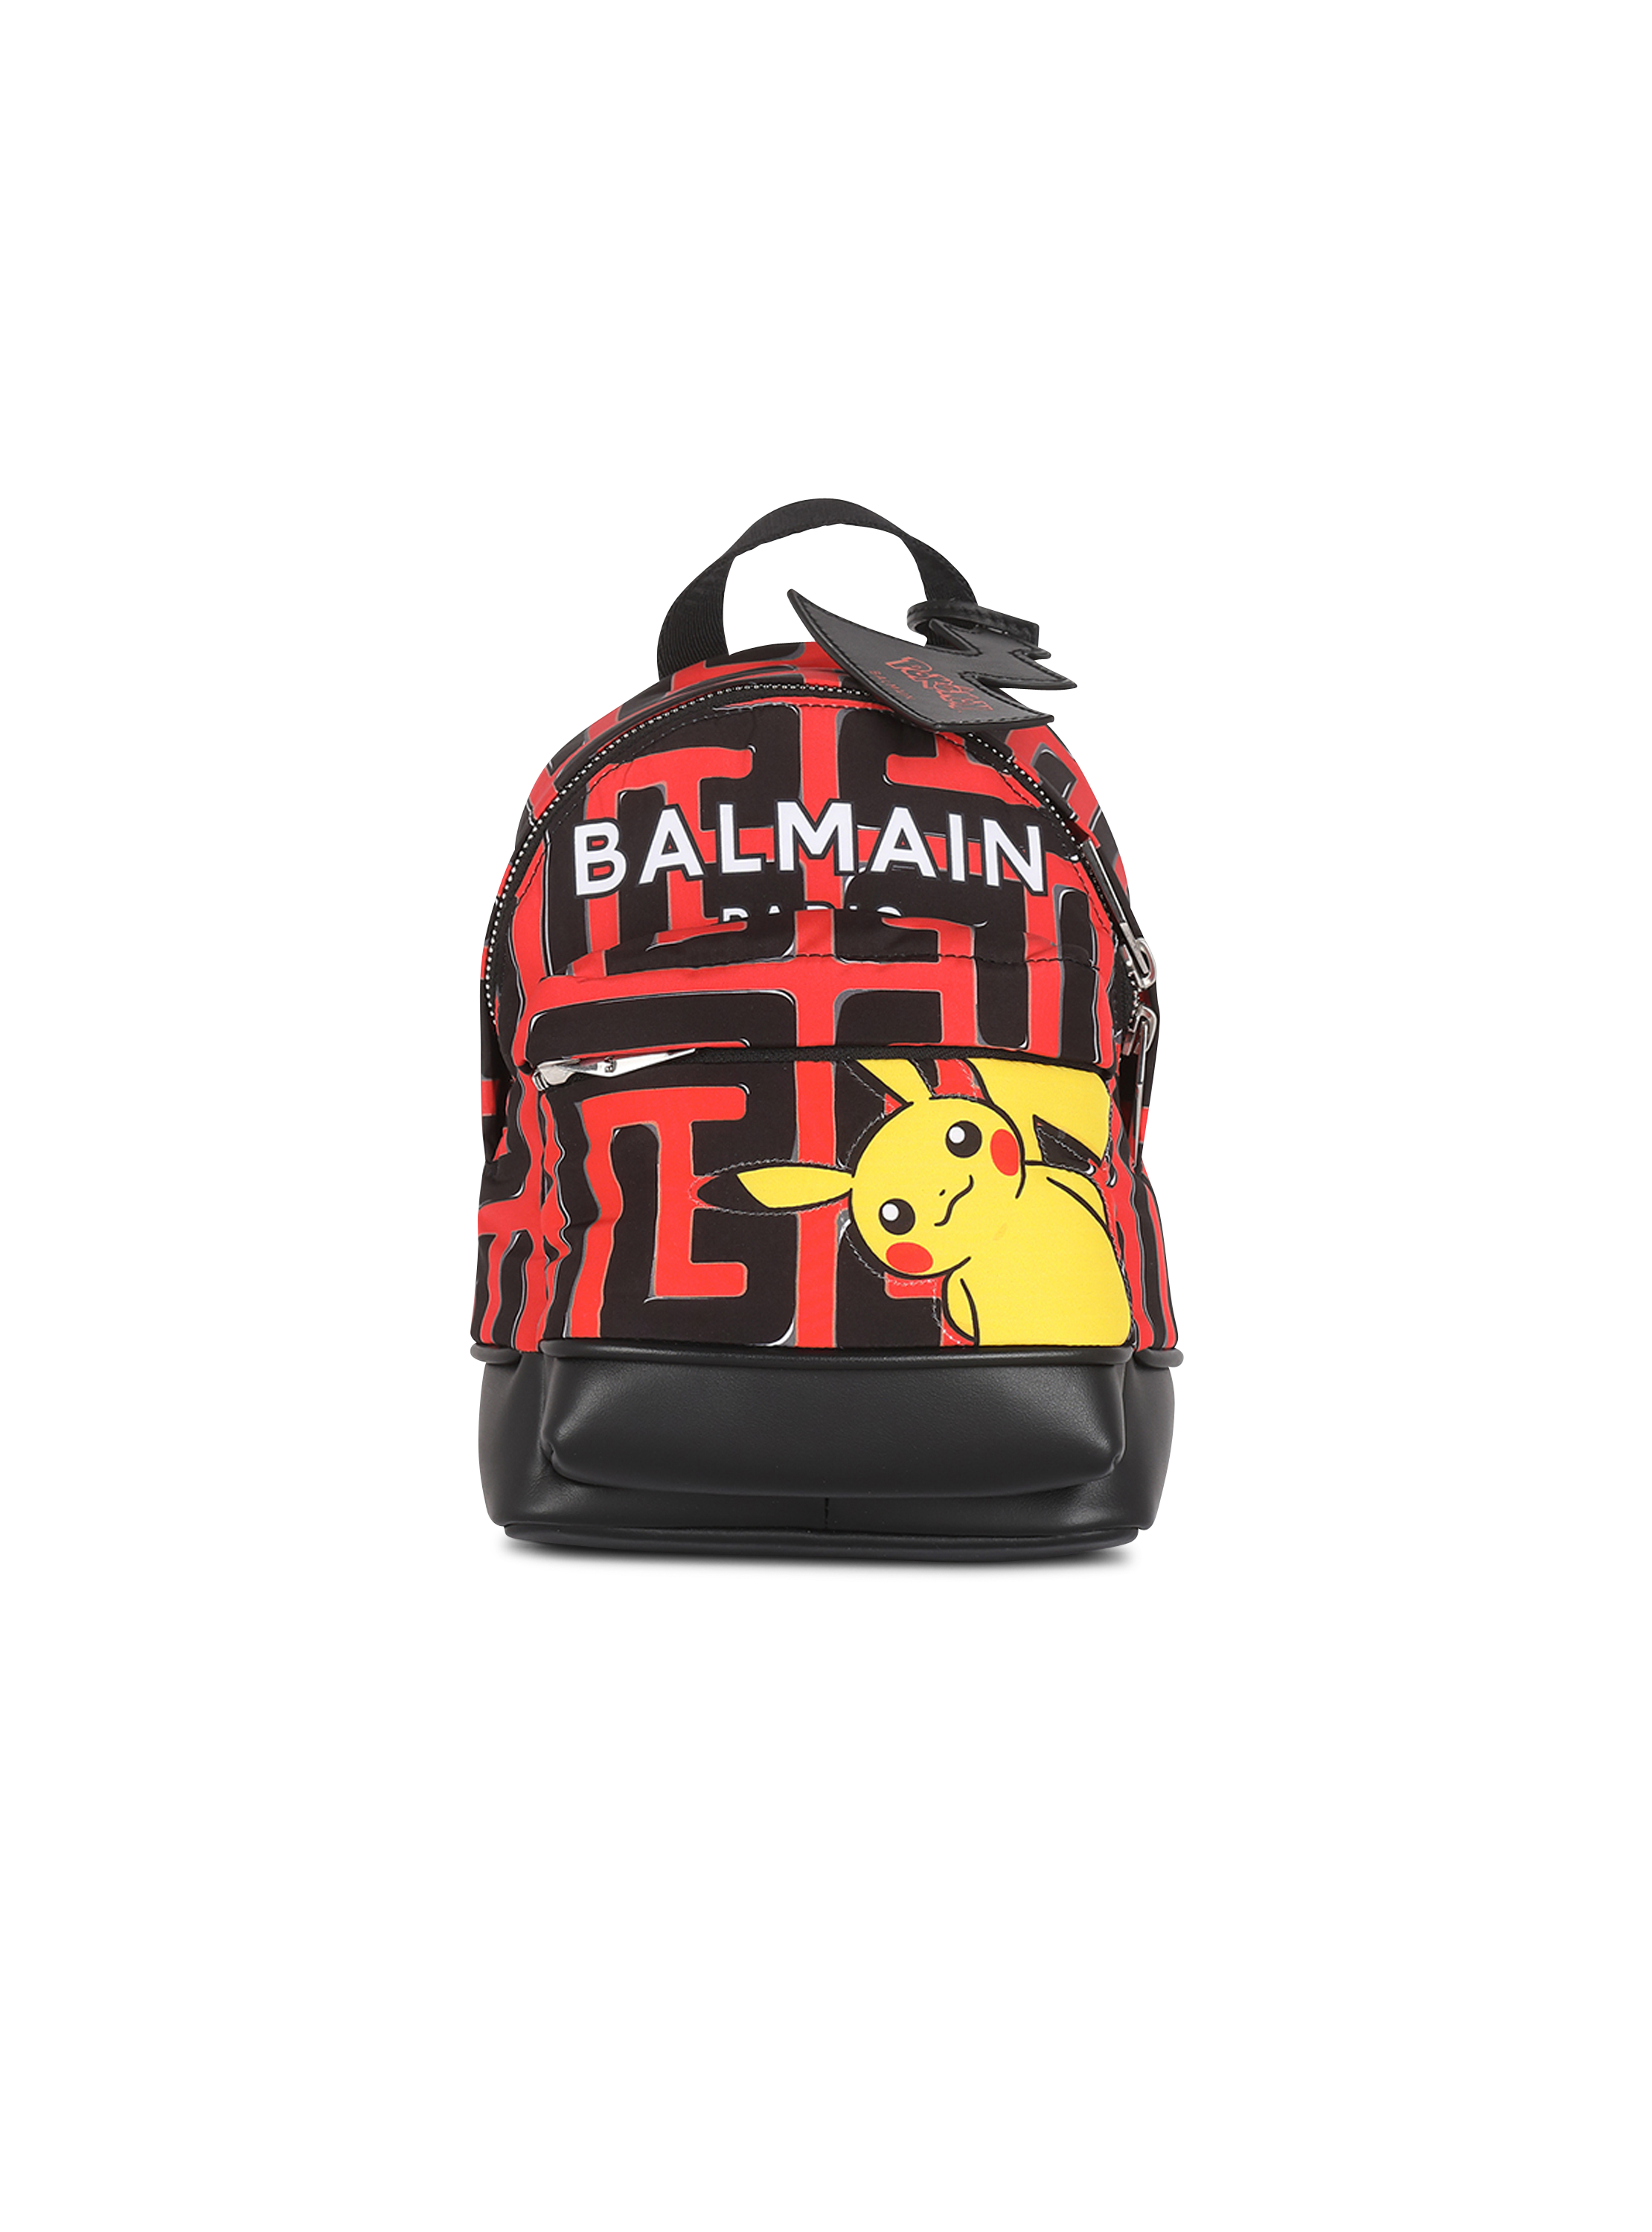 Pokemon X Balmain: Pokemon Taps Luxury Fashion Designer Balmain For A Connected Fashion Collaboration